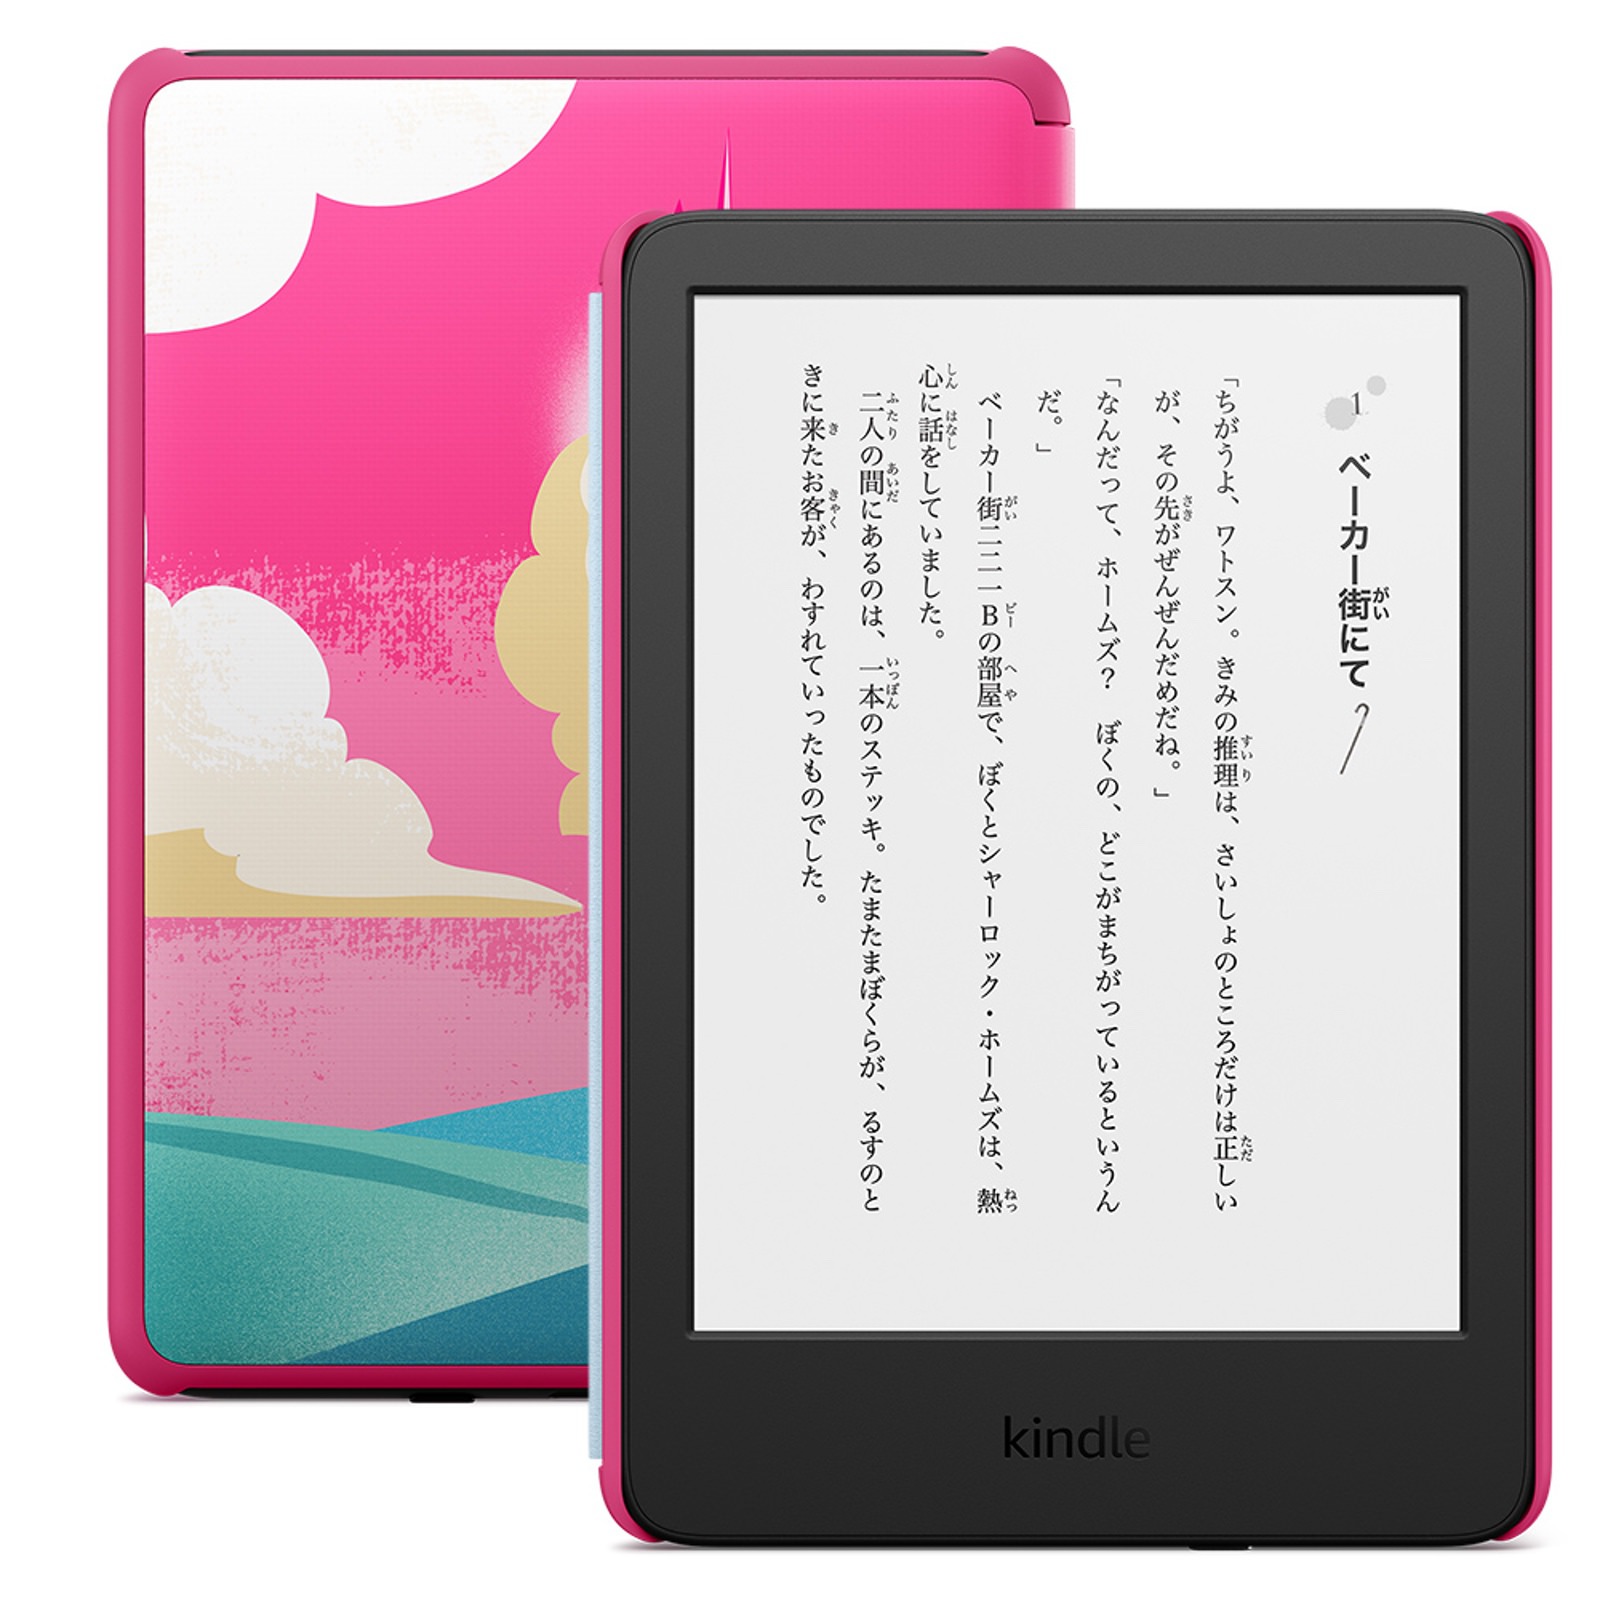 New-Kindle-and-KindleKidsModel-from-Amazon-04.jpg